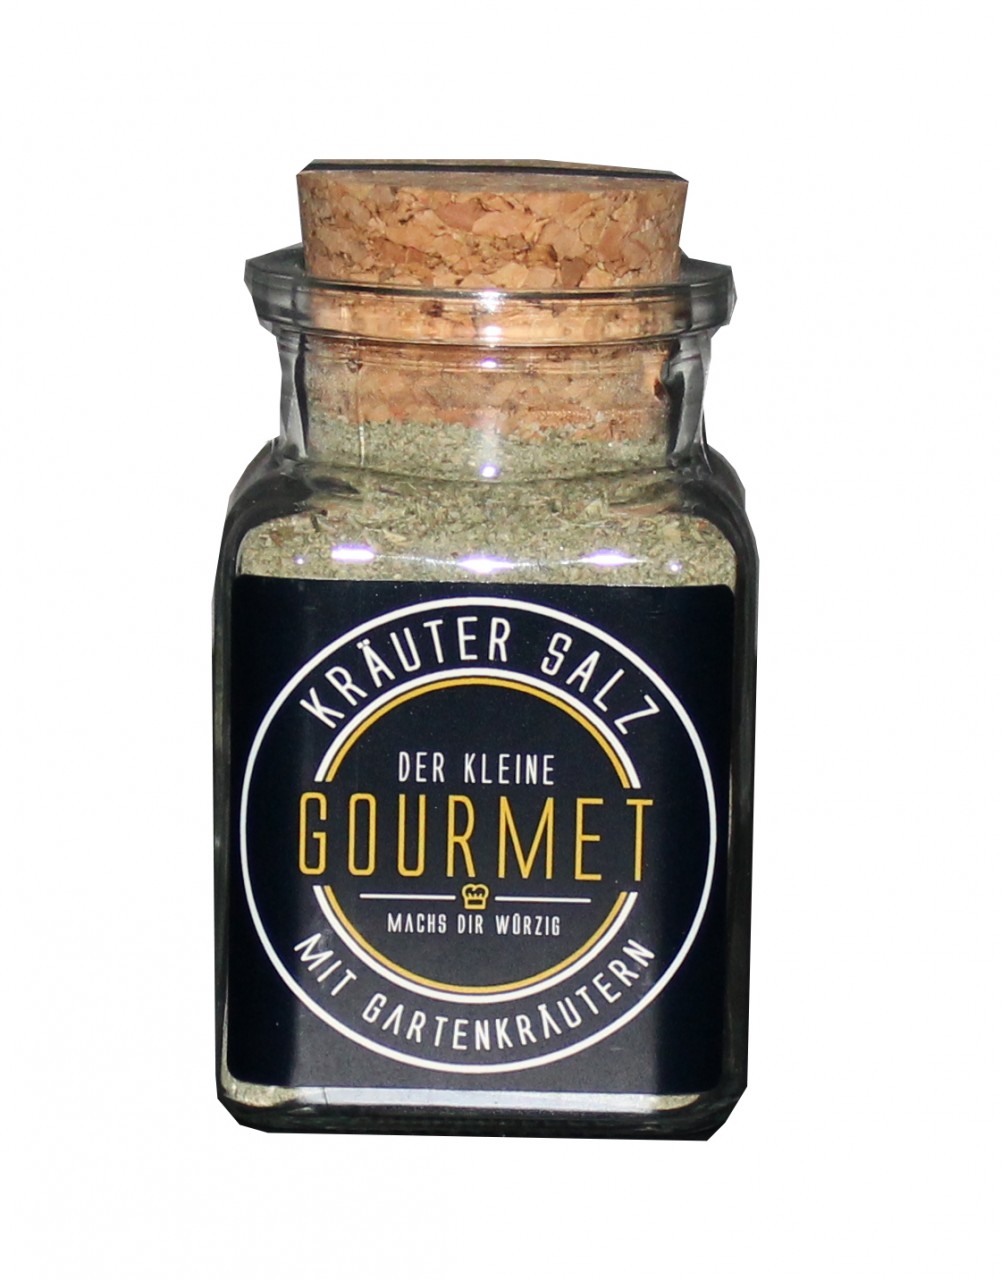 Der kleine Gourmet - Kräuter Salz unter Gewürze und Soßen > Gewürze